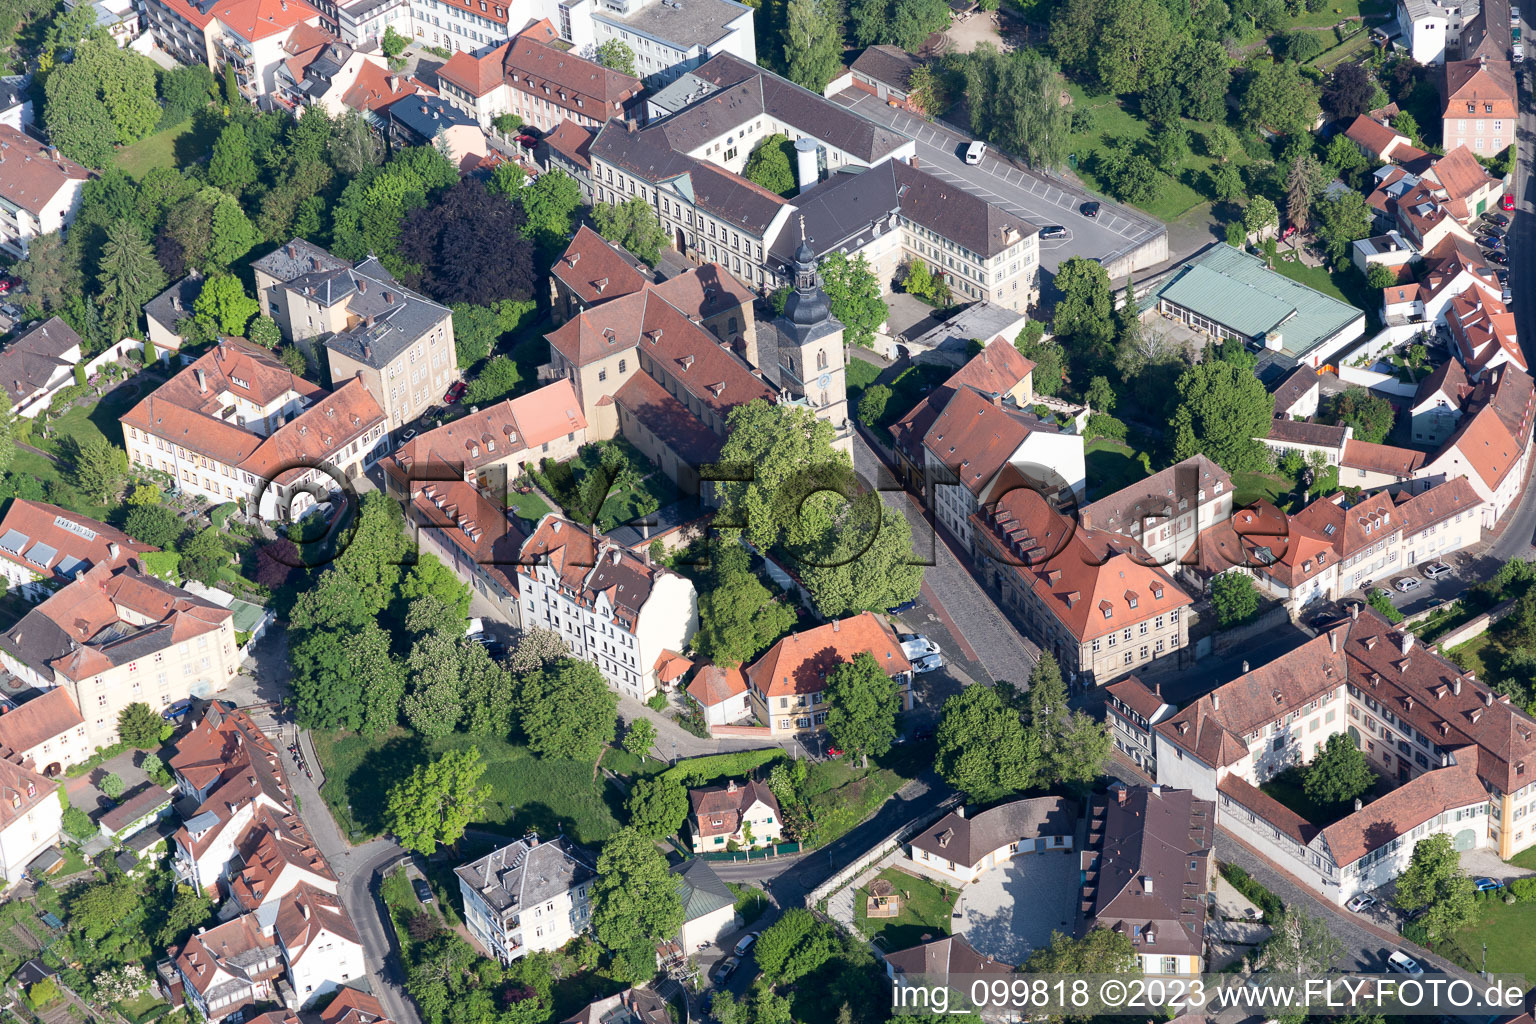 Bamberg im Bundesland Bayern, Deutschland aus der Luft betrachtet